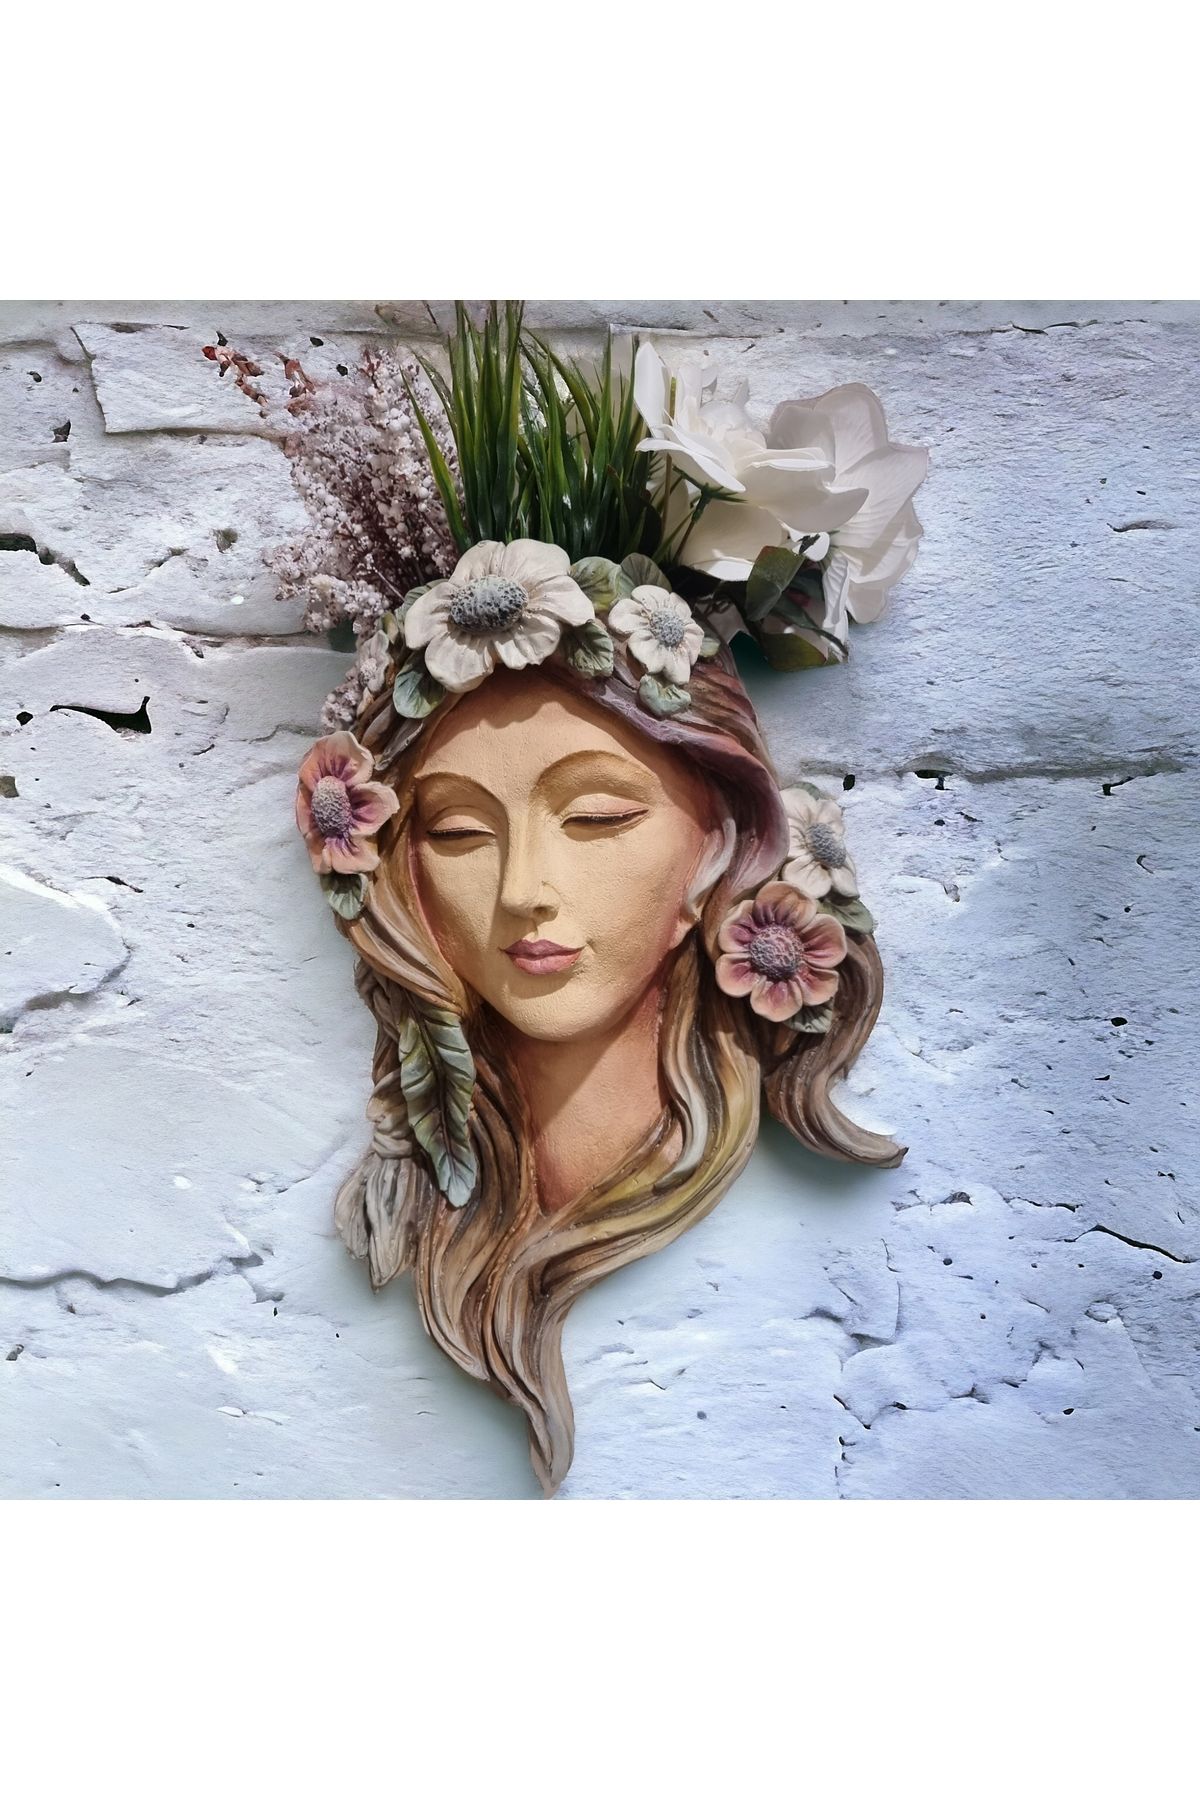 Lotus Dekoratif Saksı/çicekli Kadın Polyester Saksı/duvar Saksısı Duvar Dekorasyonu